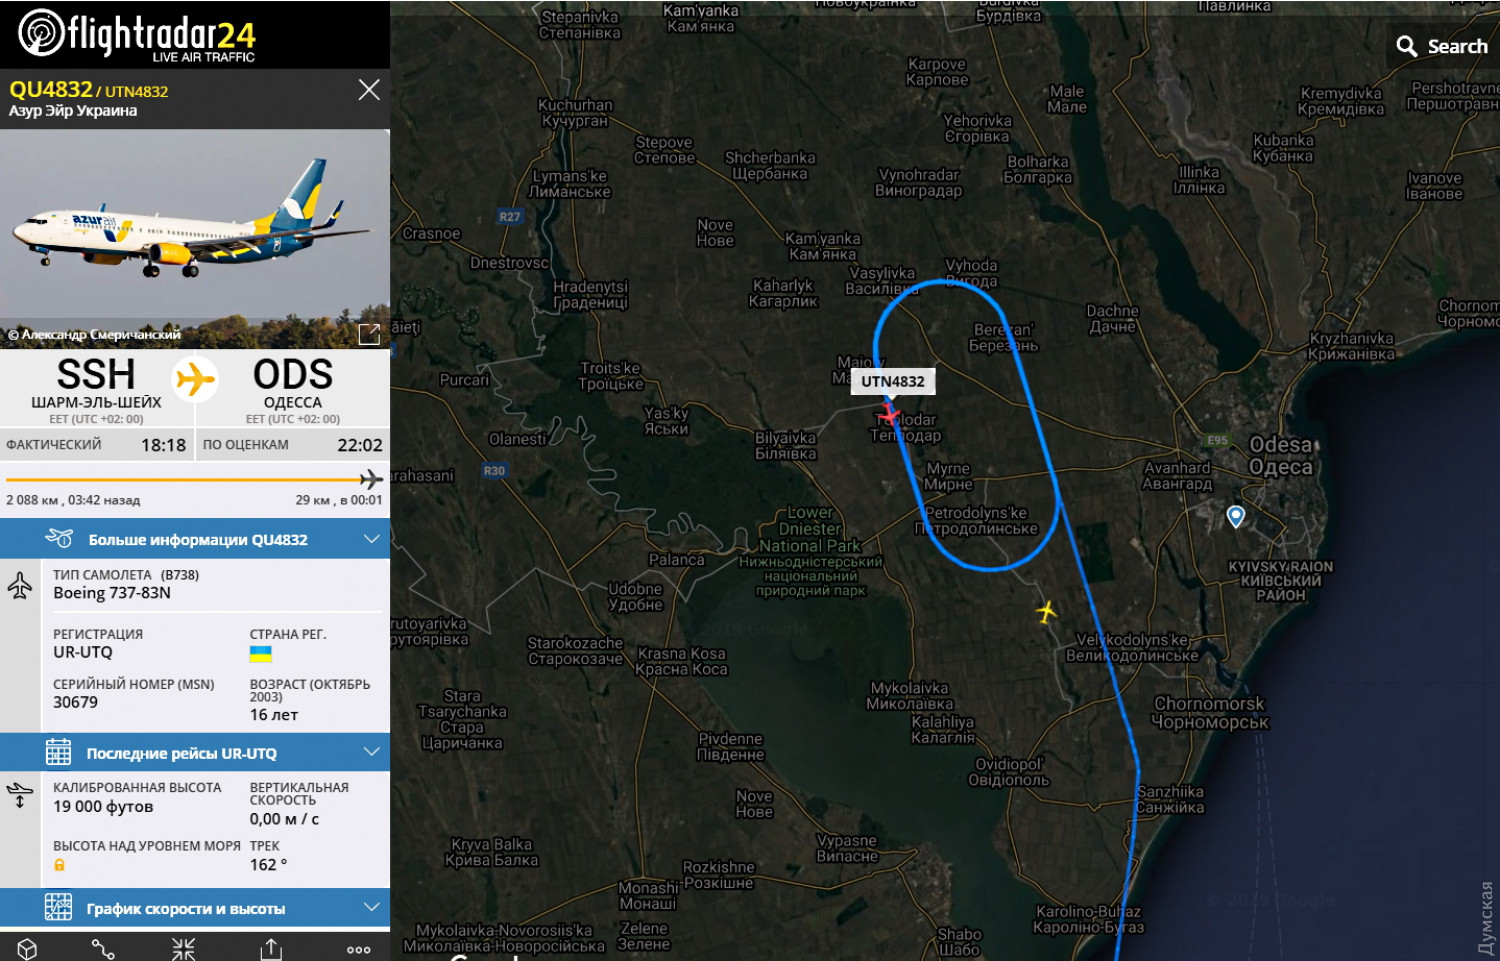 Авиалайнер из Шарм-эль-Шейха не смог приземлиться в Одессе, фото: Flightradar24